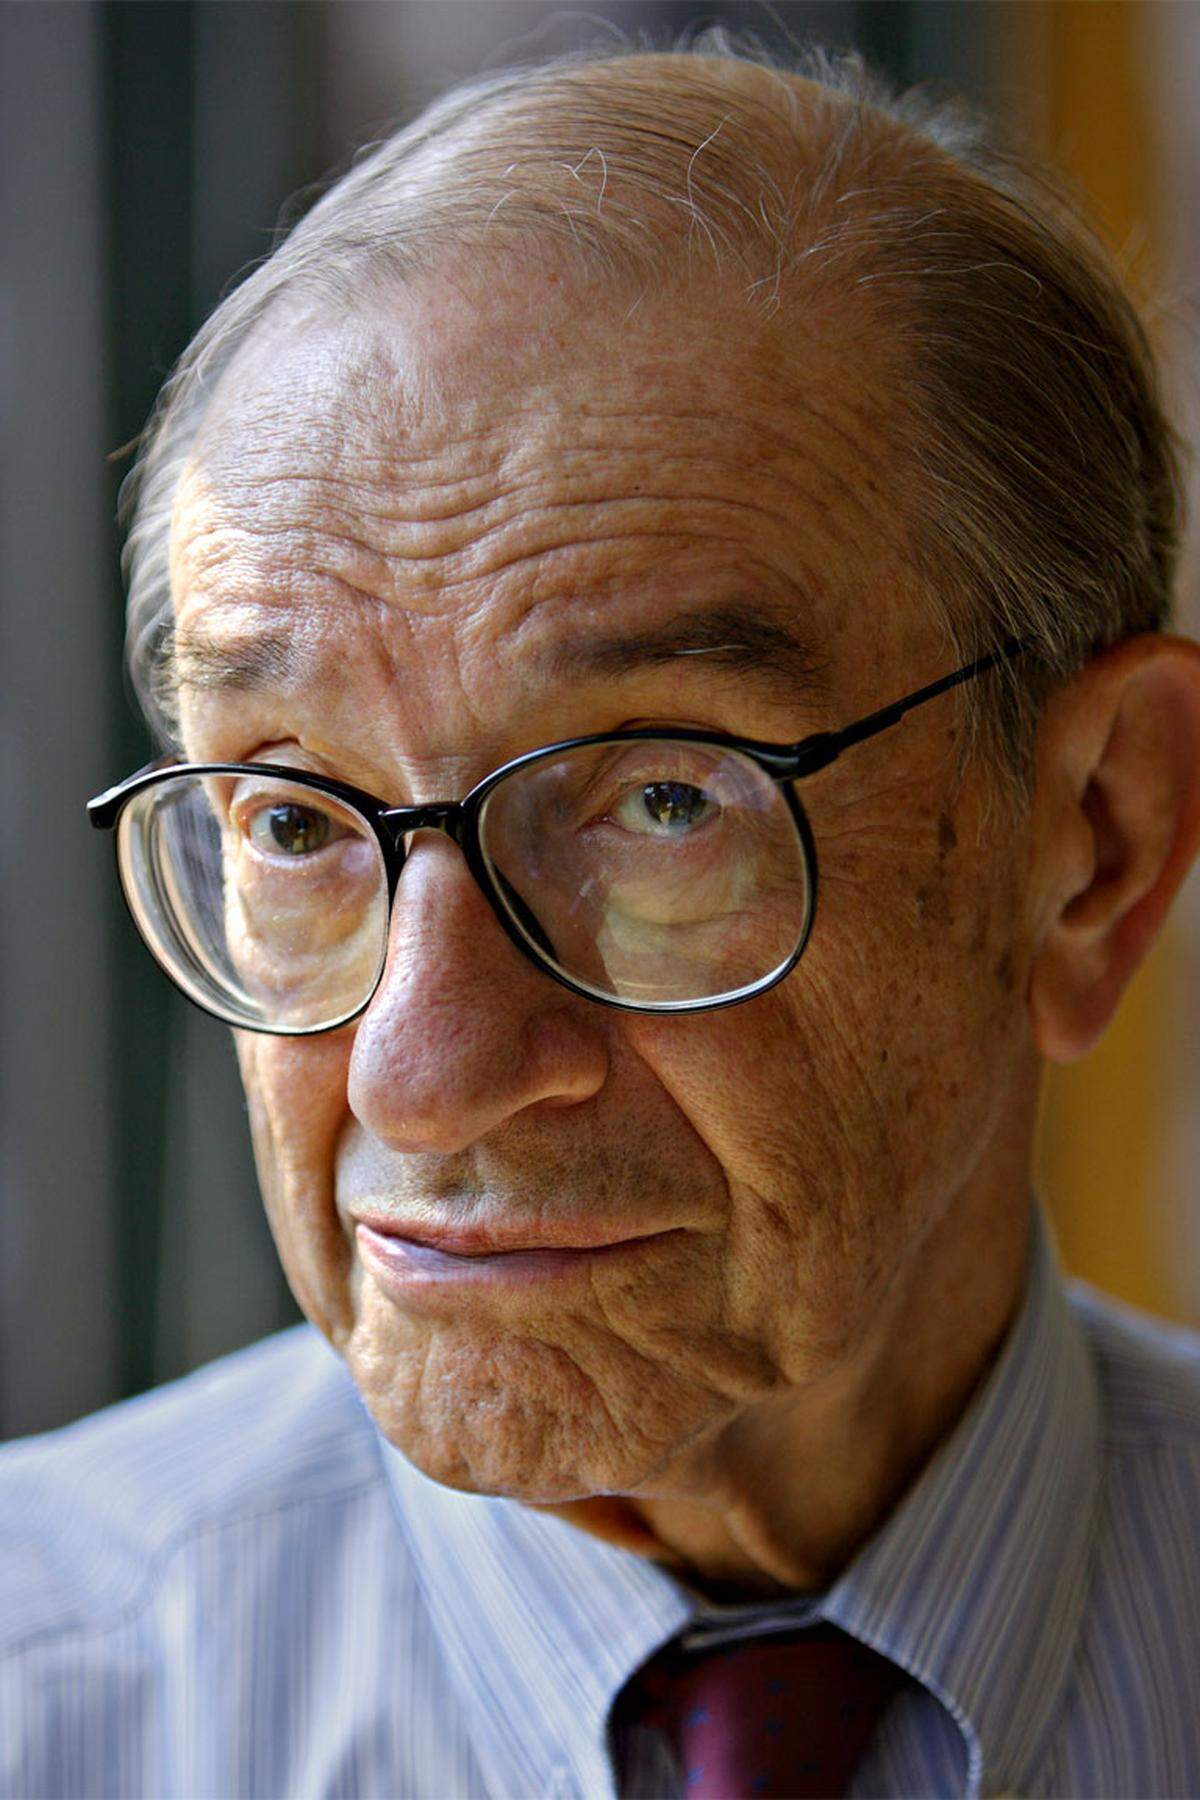 Auch dem Ex-Notenbankchef selbst ist ein - nicht ganz so ernst gemeinter - Index gewidmet. Vor der Fed-Sitzung begutachteten Journalisten immer besonders genau die Aktentasche von Alan Greenspan. Eine Leitzinsänderung war demnach wahrscheinlich, wenn die Tasche prall gefüllt war.